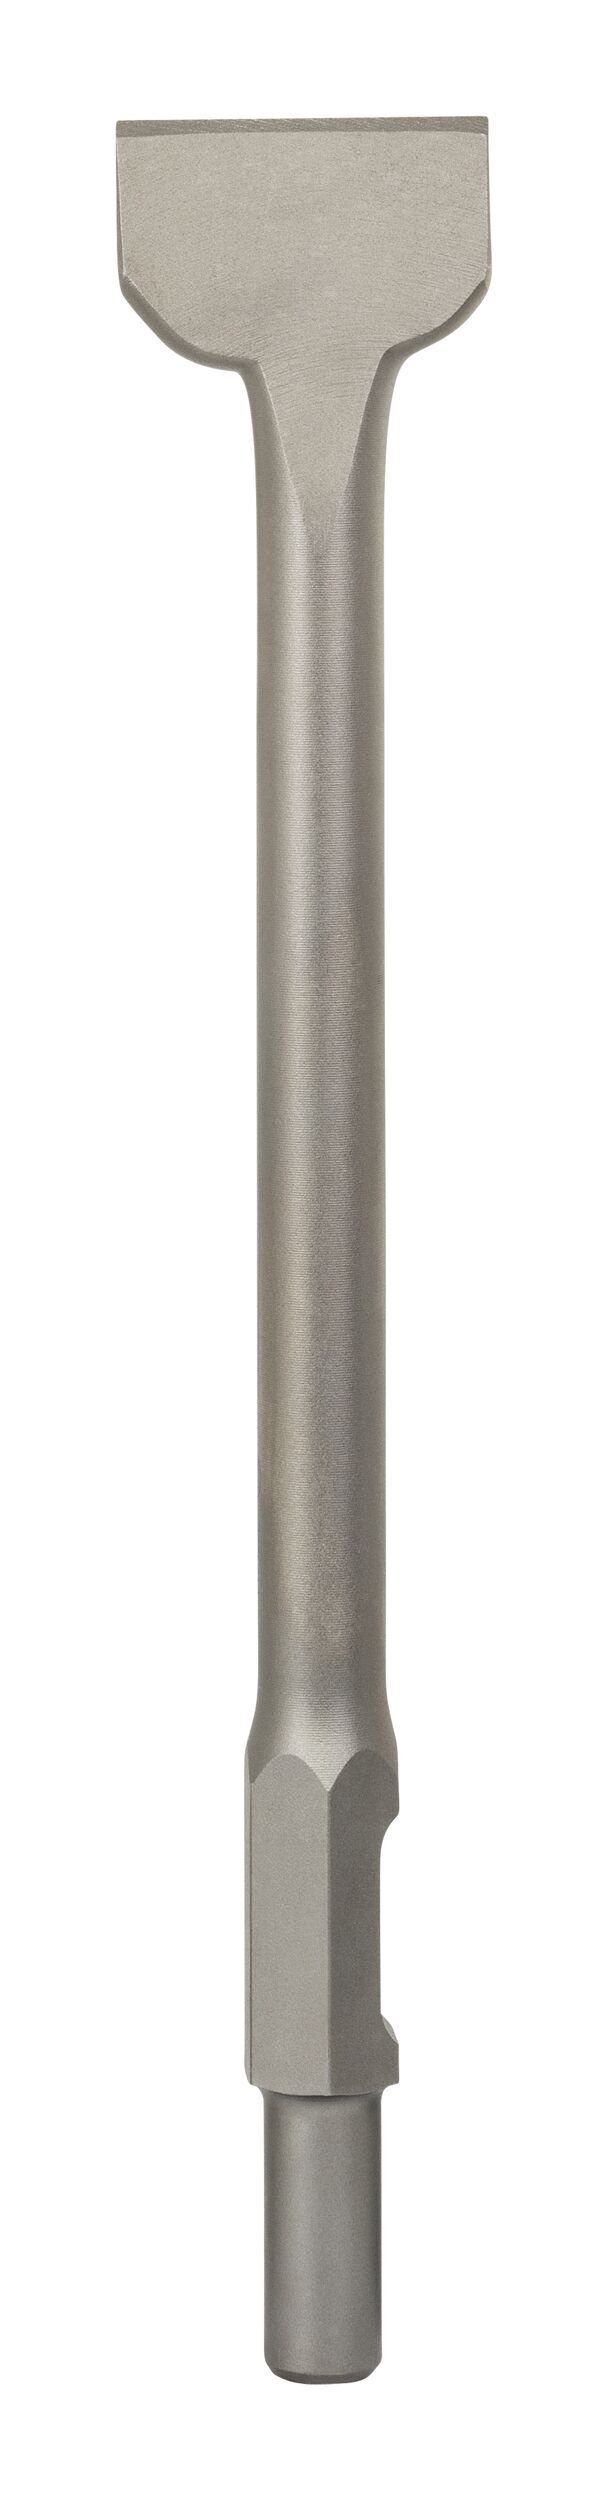 BOSCH Steinbohrer, Spatmeißel mit 30-mm-Sechskantaufnahme - 450 x 75 mm